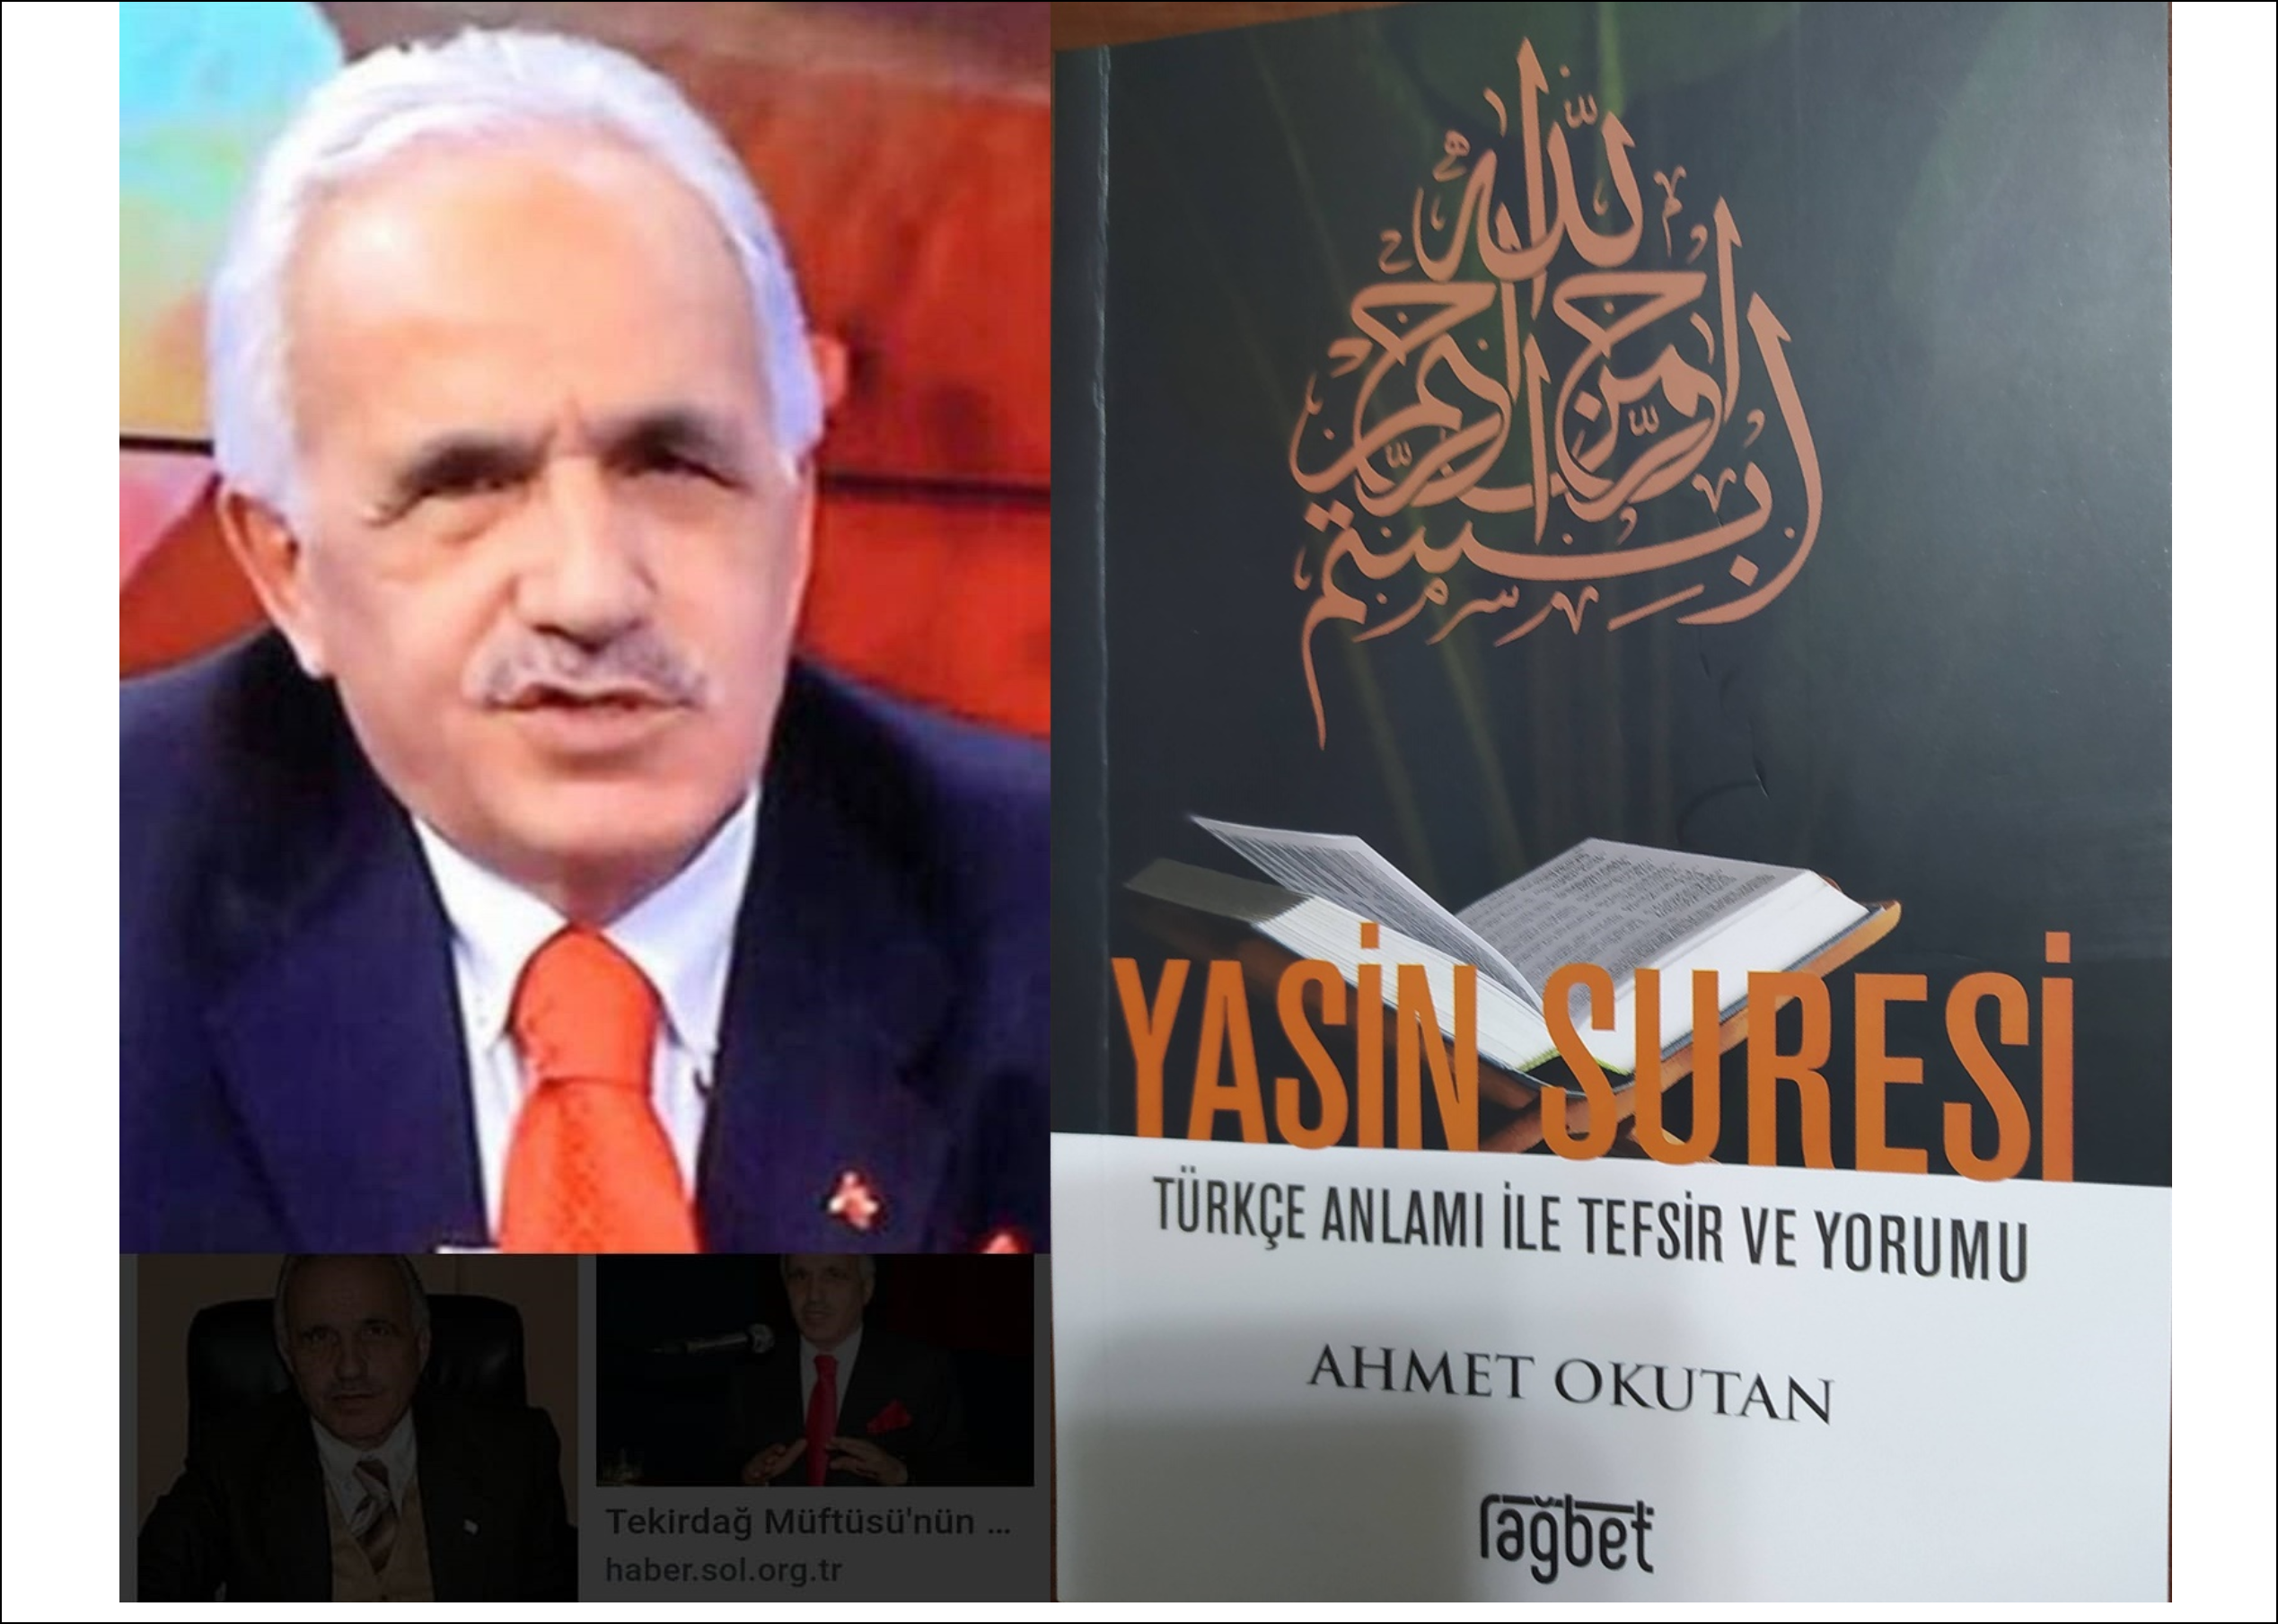 Emekli Müftü Ahmet Okutan’ın Yeni Kitabı Yayınlandı